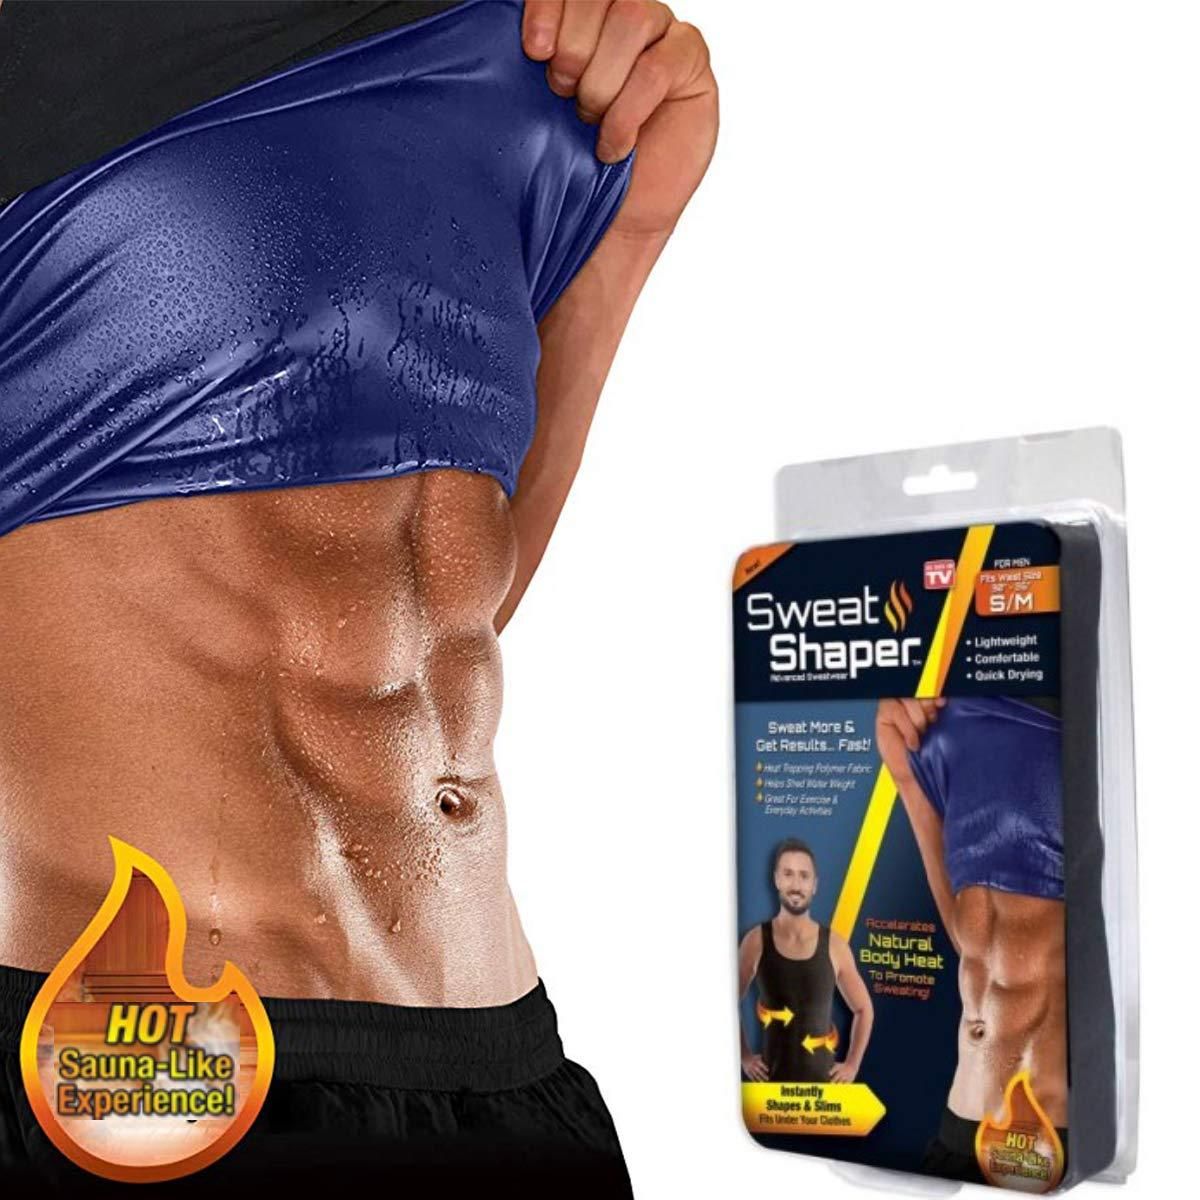 Sweat Belt - Hot Body Shaper Belly Fat Burner For Men & Women, Pet